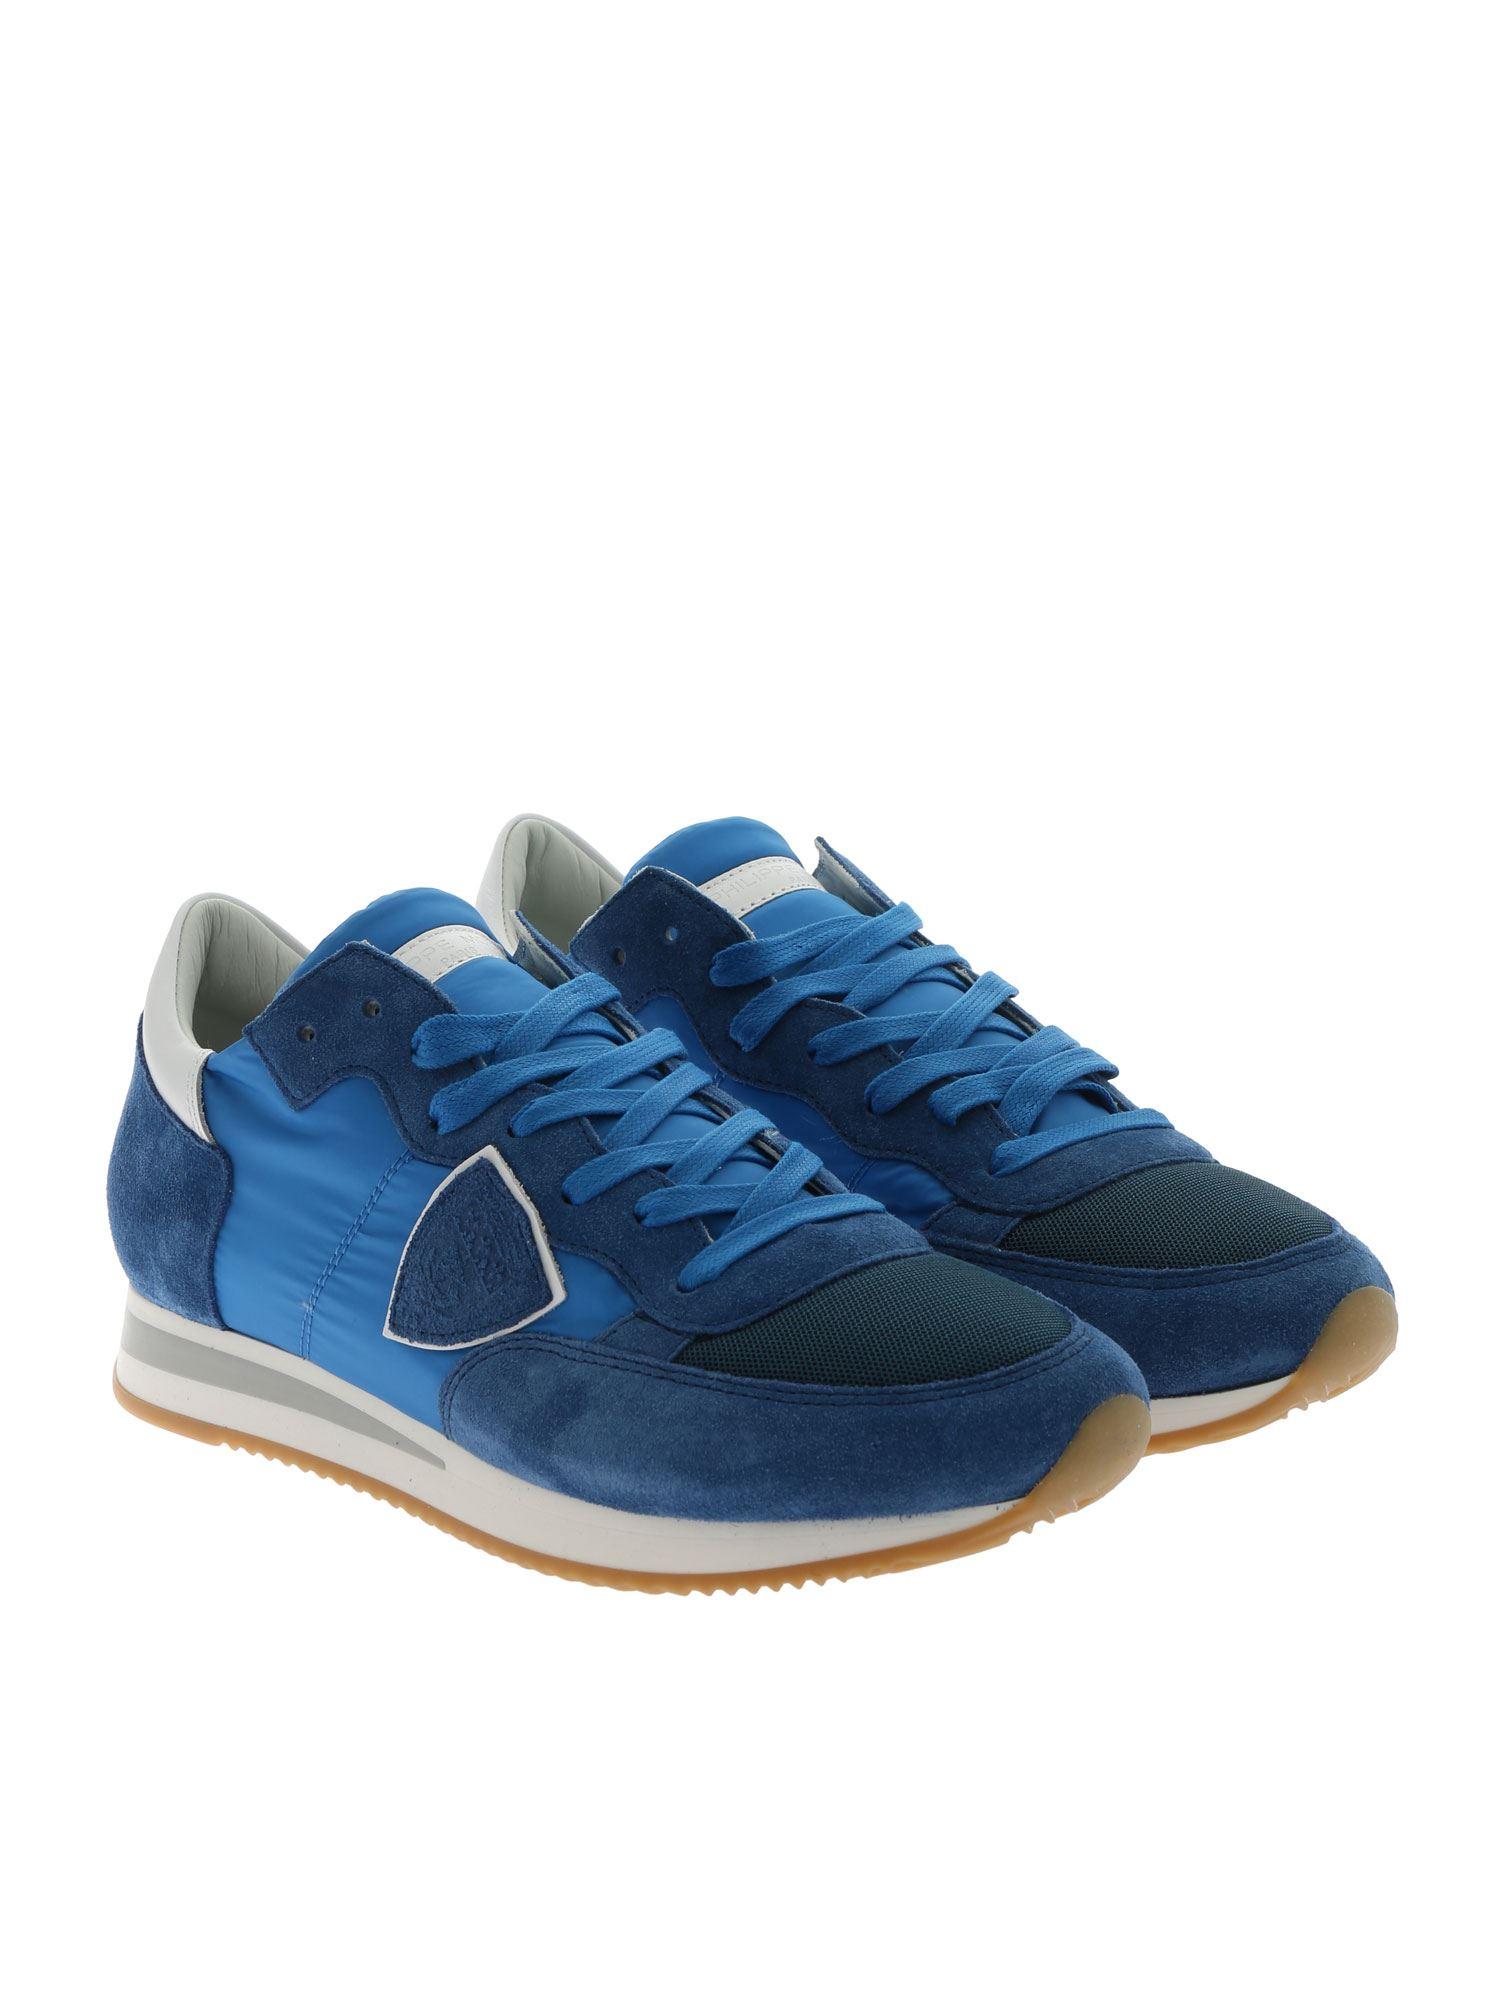 Philippe Model Suede Tropez L Mondial Ocean Sneakers in Blue for Men - Lyst